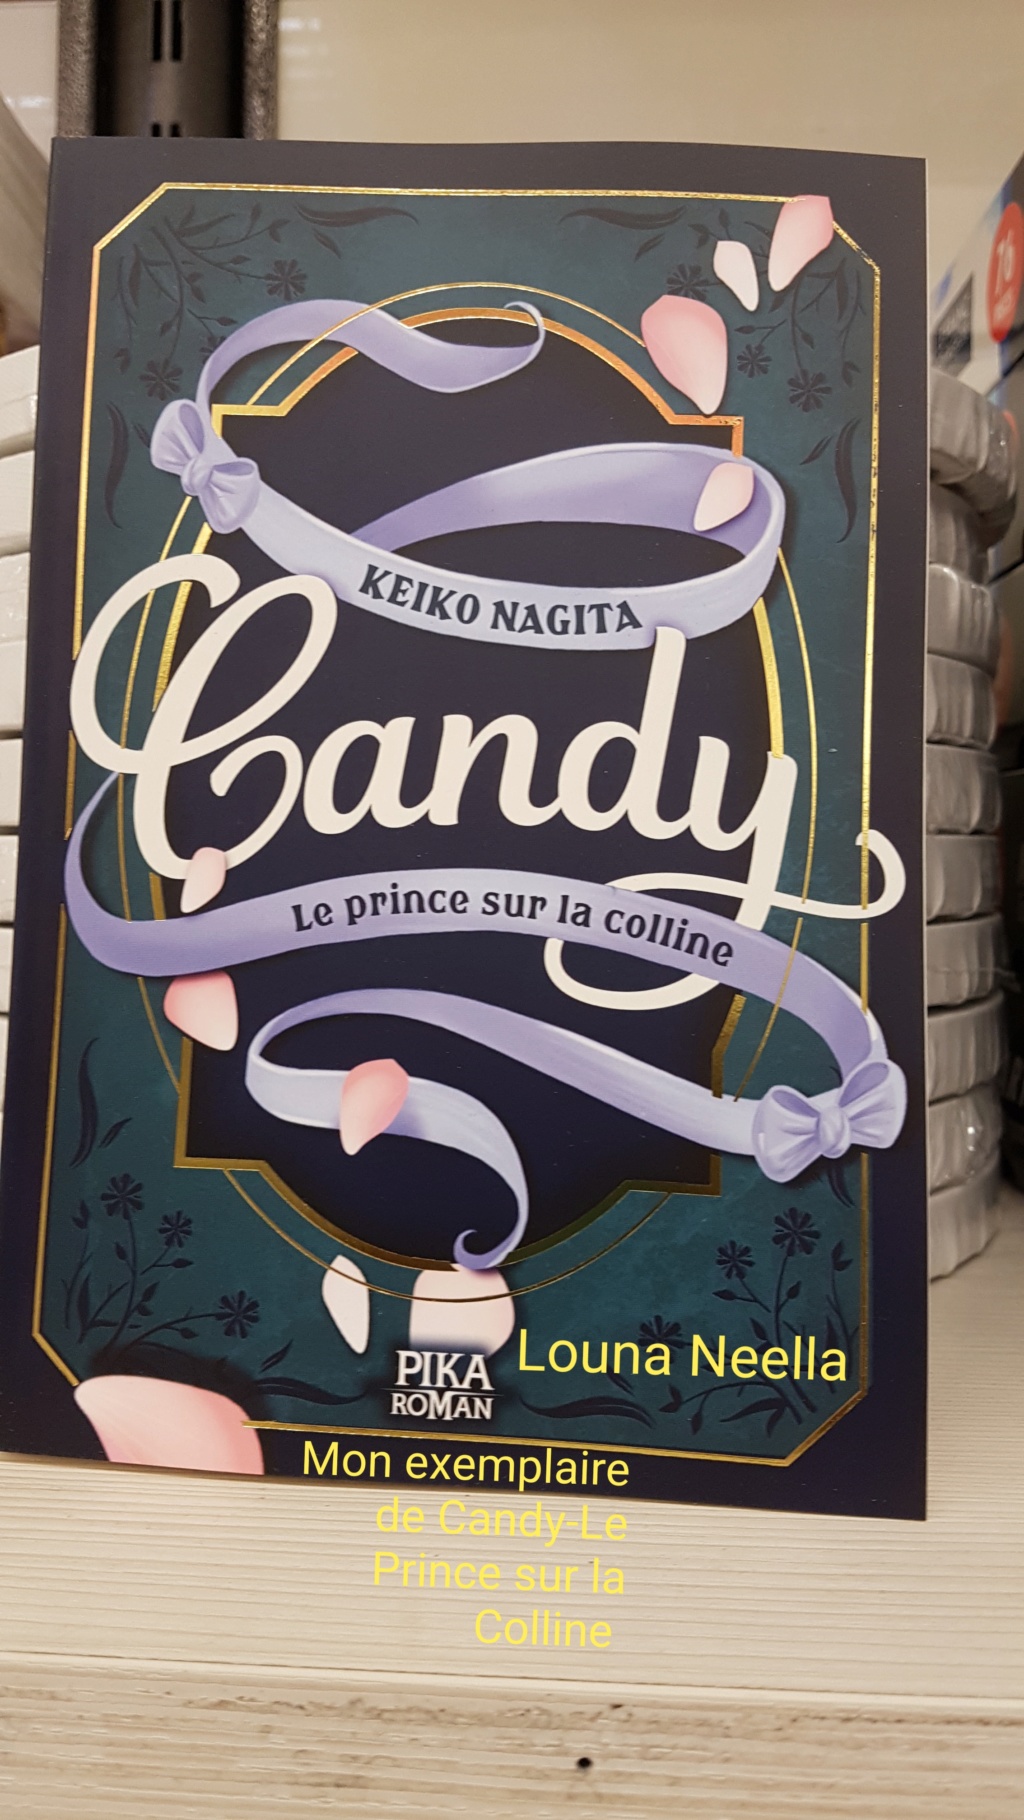 Roman Candy-Le Prince sur la Colline  20190611